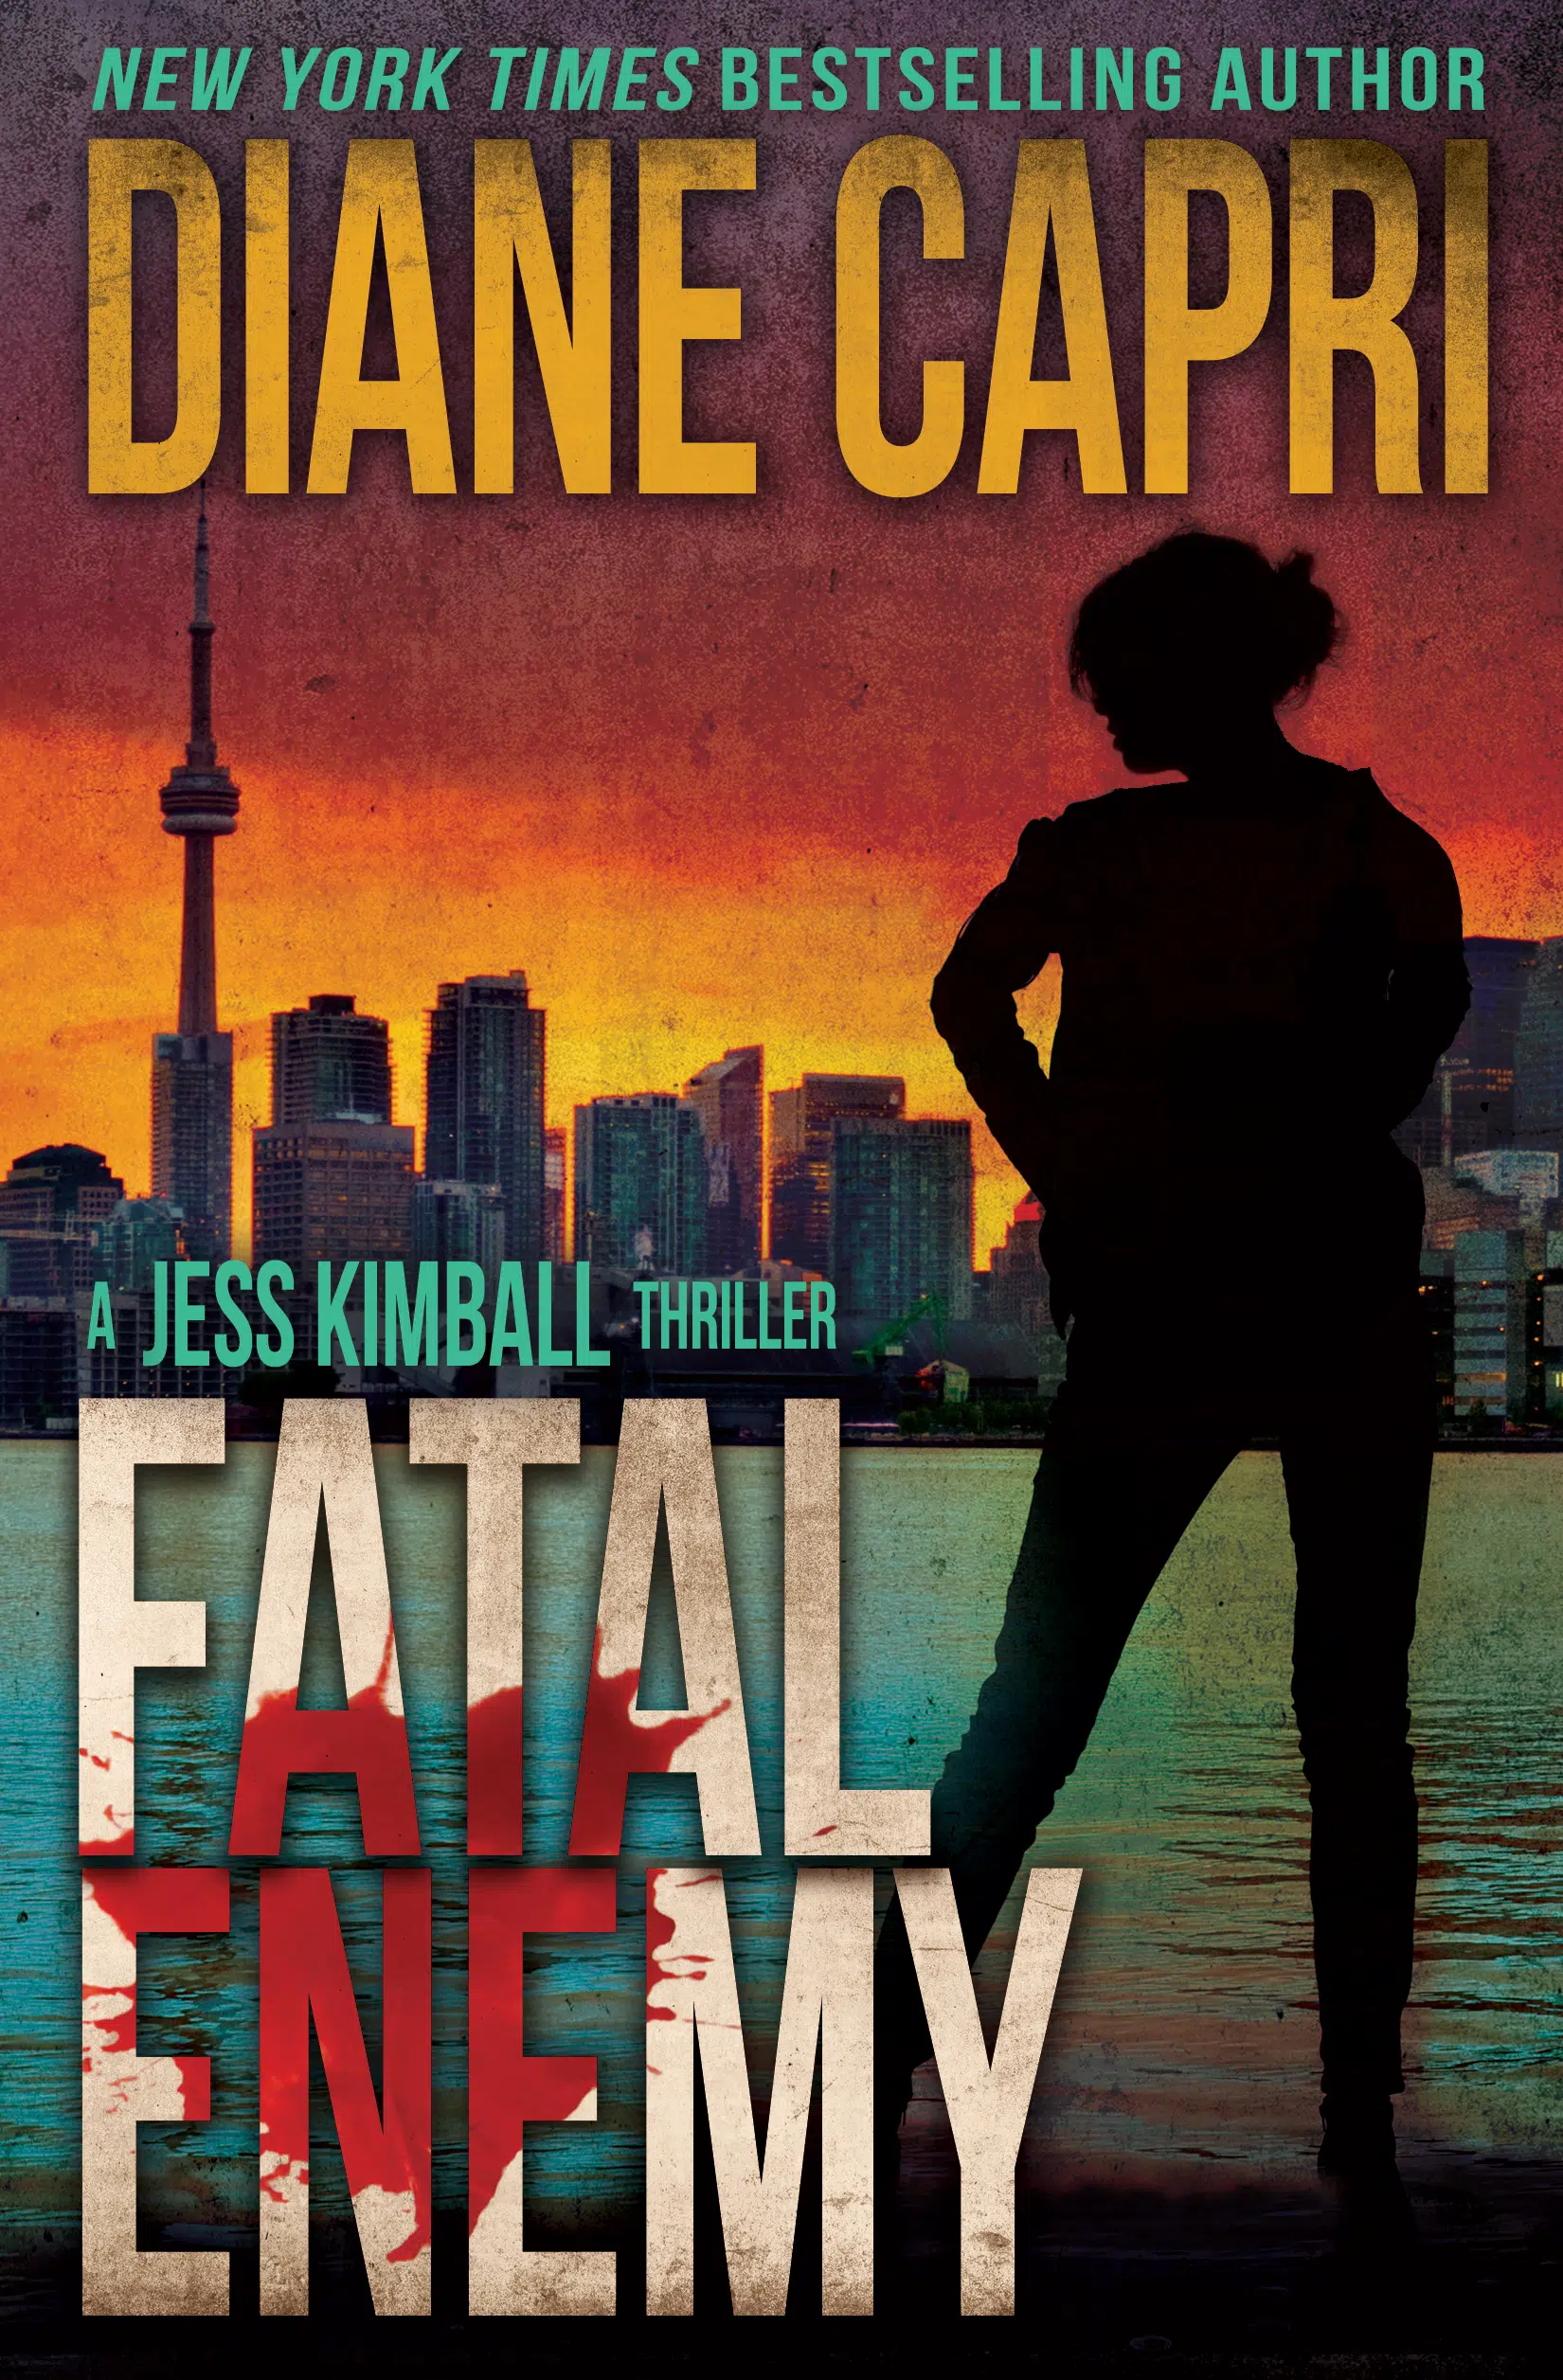 Fatal Enemy by Diane Capri